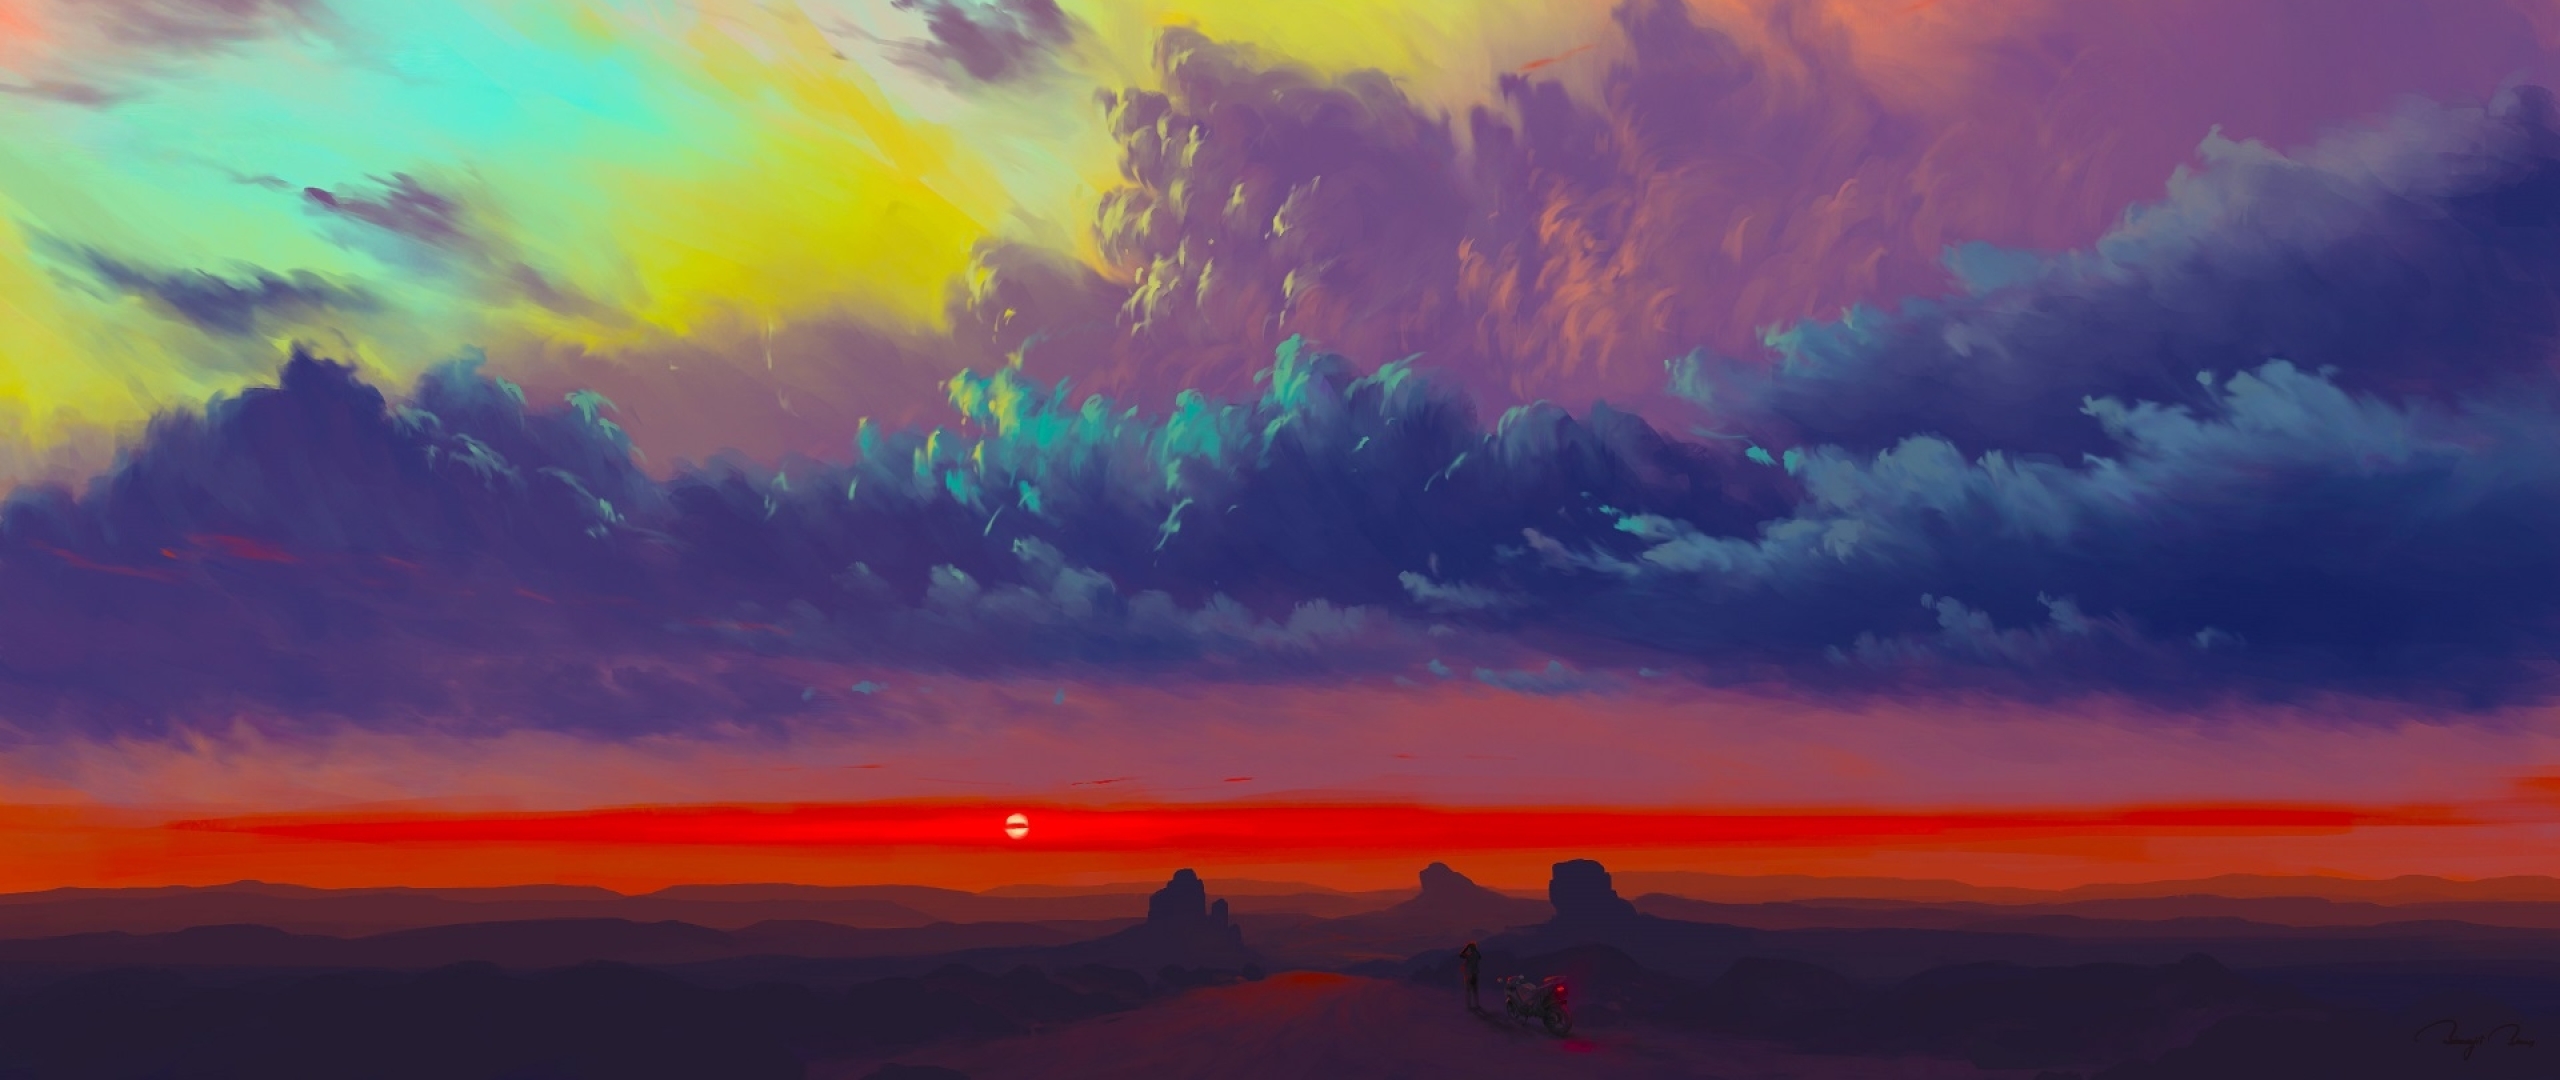 2560x1080 Amazing Sunset Art 2560x1080 Resolution Wallpaper Hd Artist